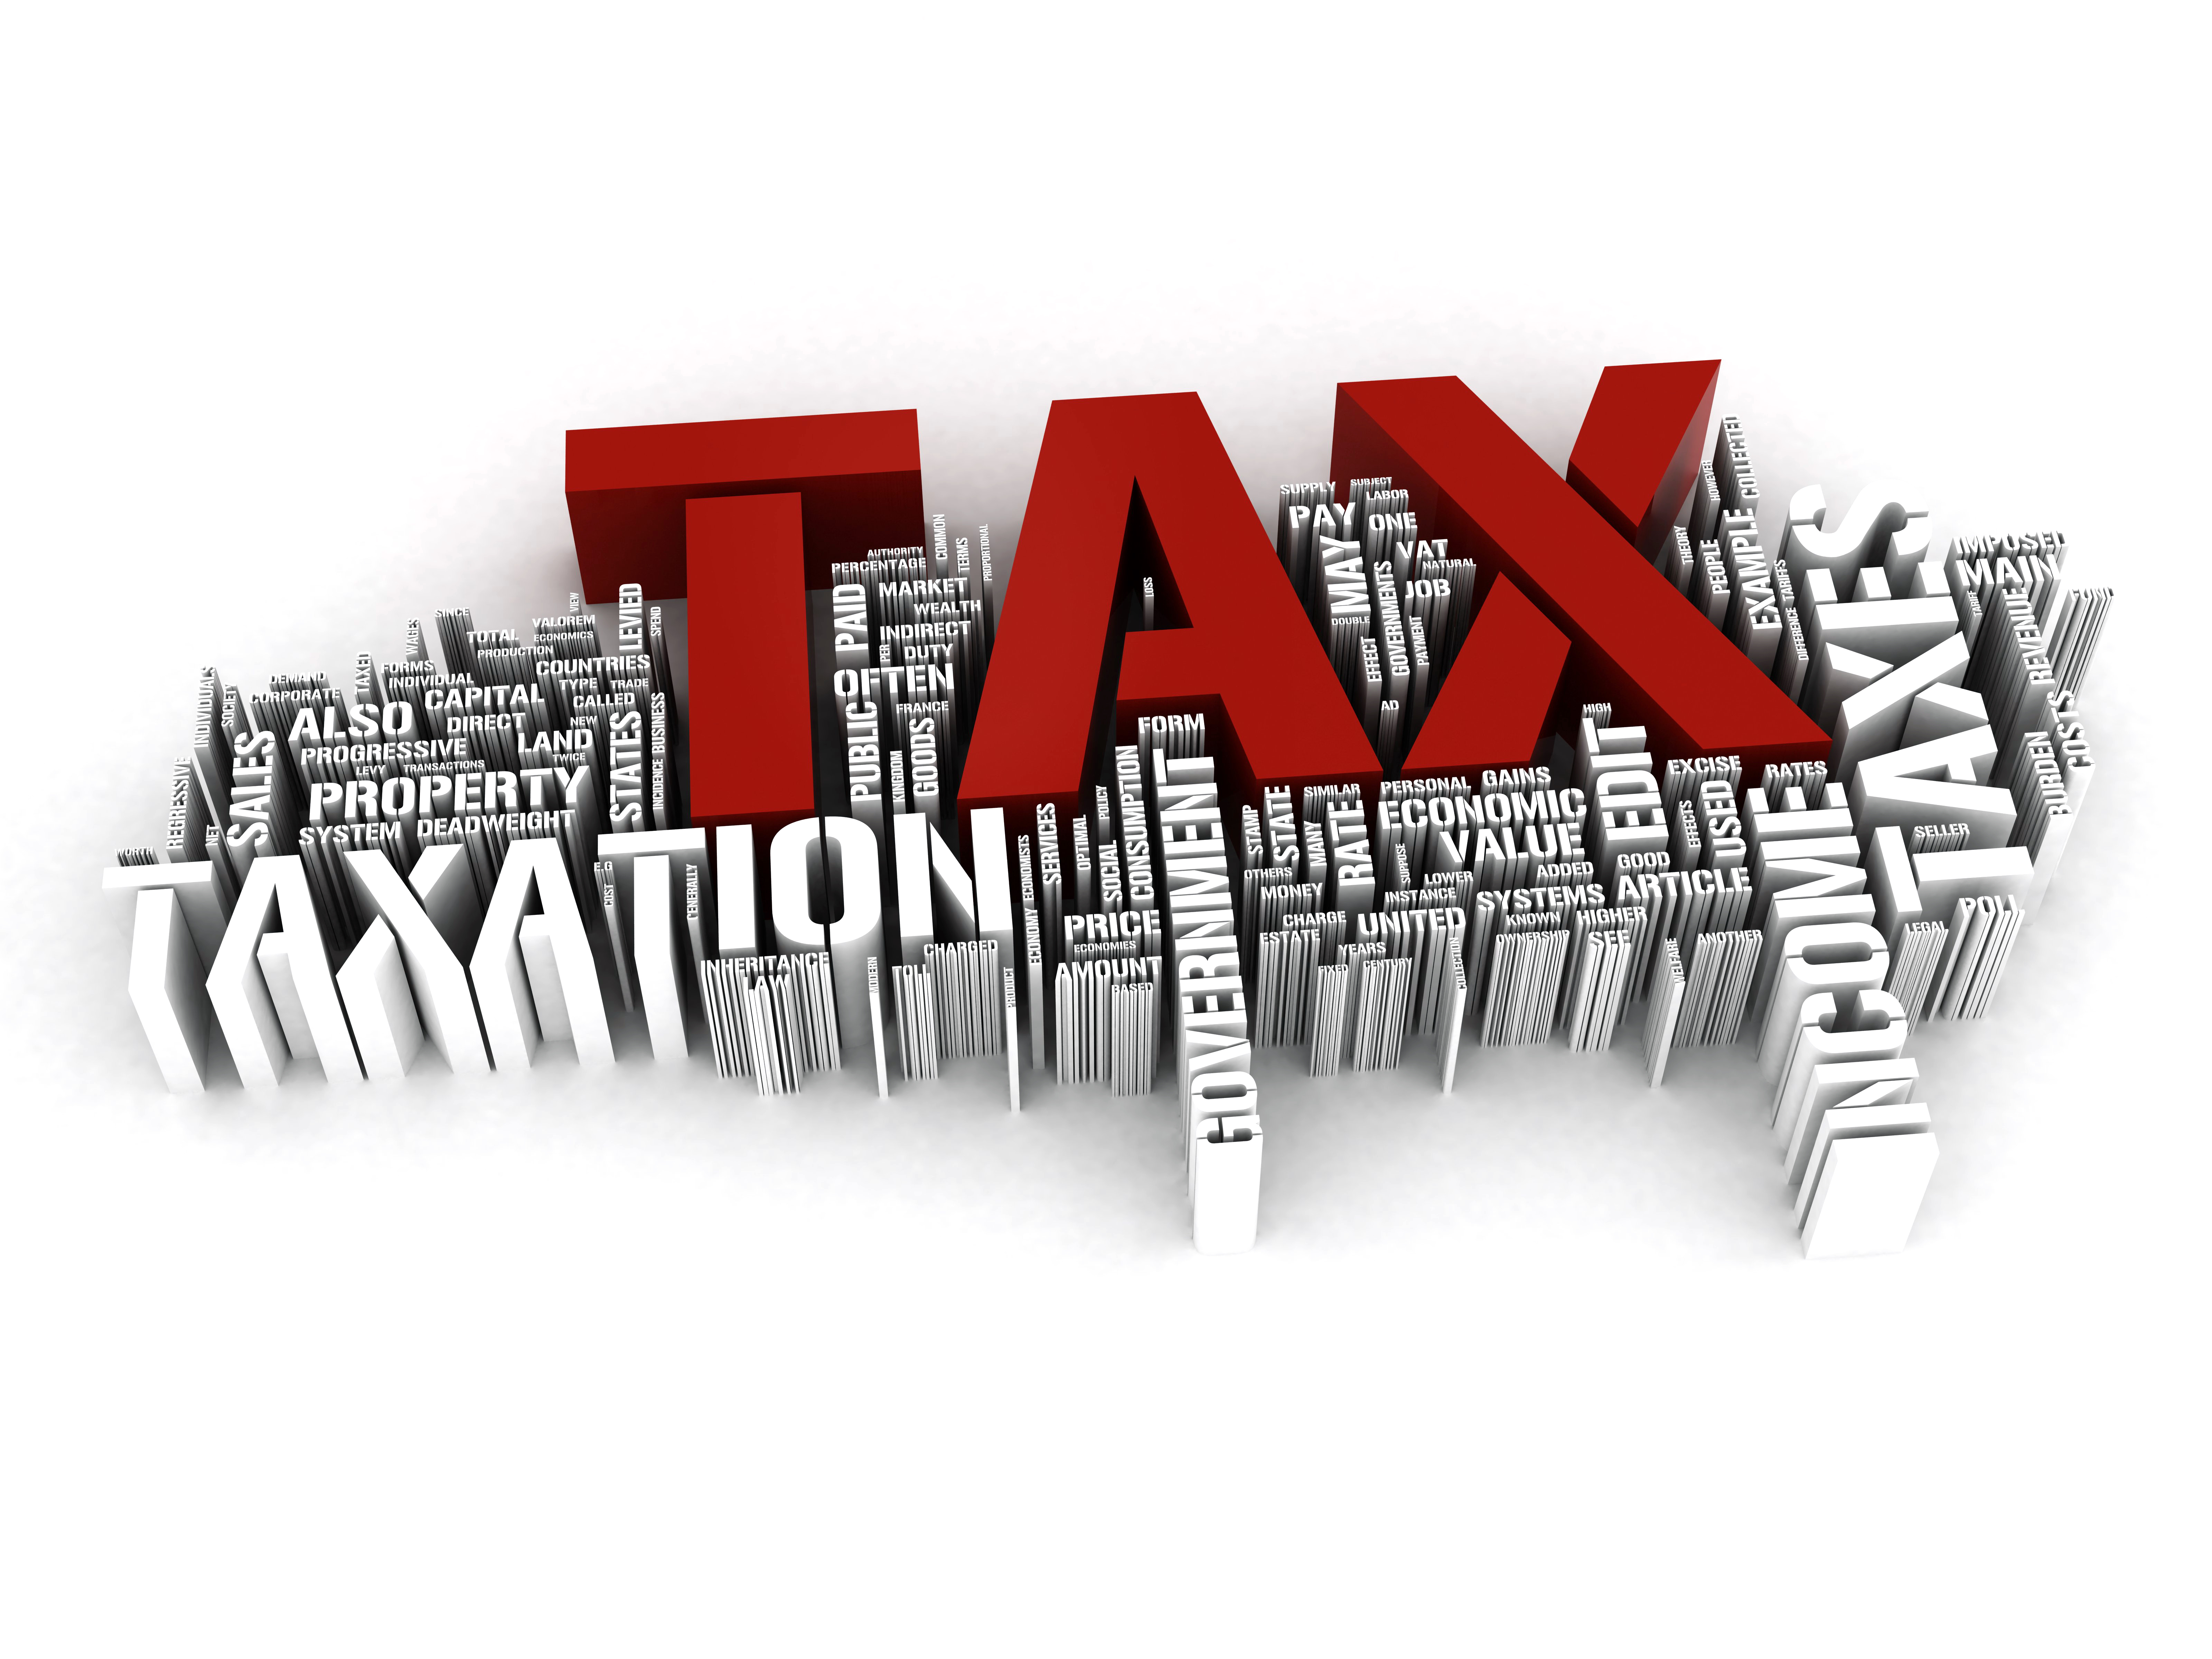 tax planning ภาษีเงินได้นิติบุคคล vs ภาษีมูลค่าเพิ่ม เพื่อช่วยลดภาระภาษีของกิจการ